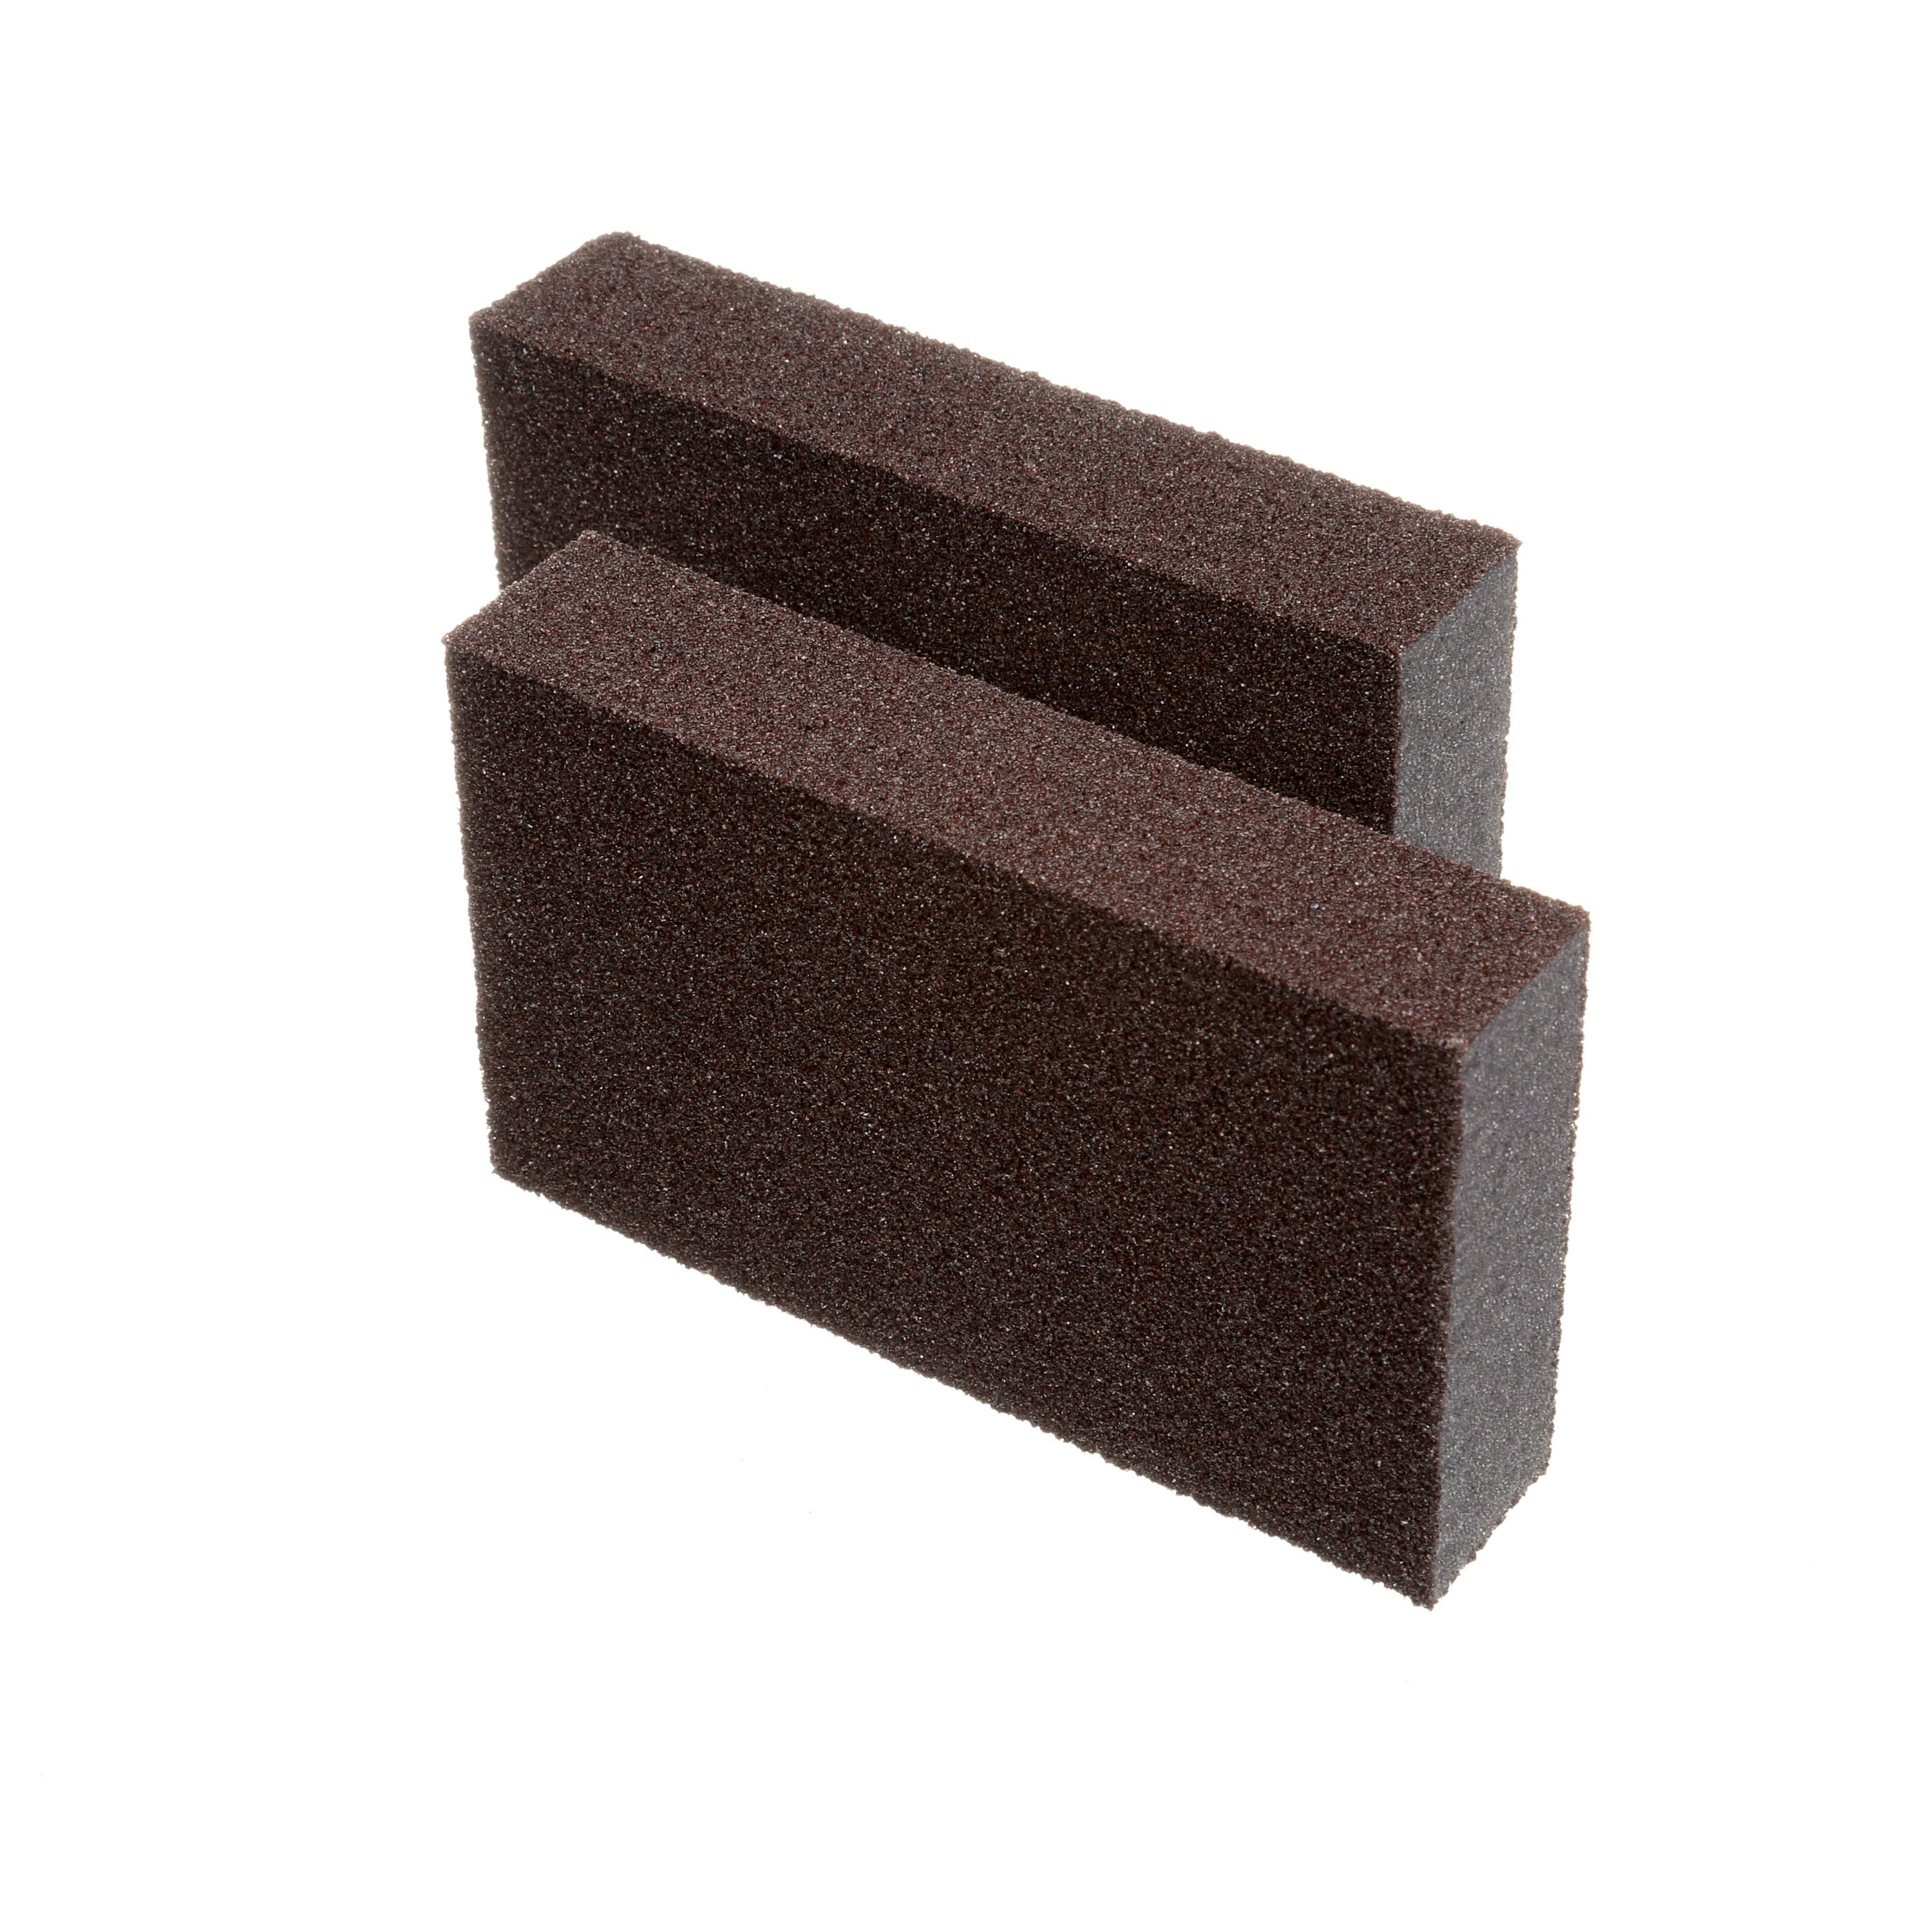 Rectangular Sanding Sponge, 8-7/8 x 4 x 3/4, 4 Sided 220 Fine Grit